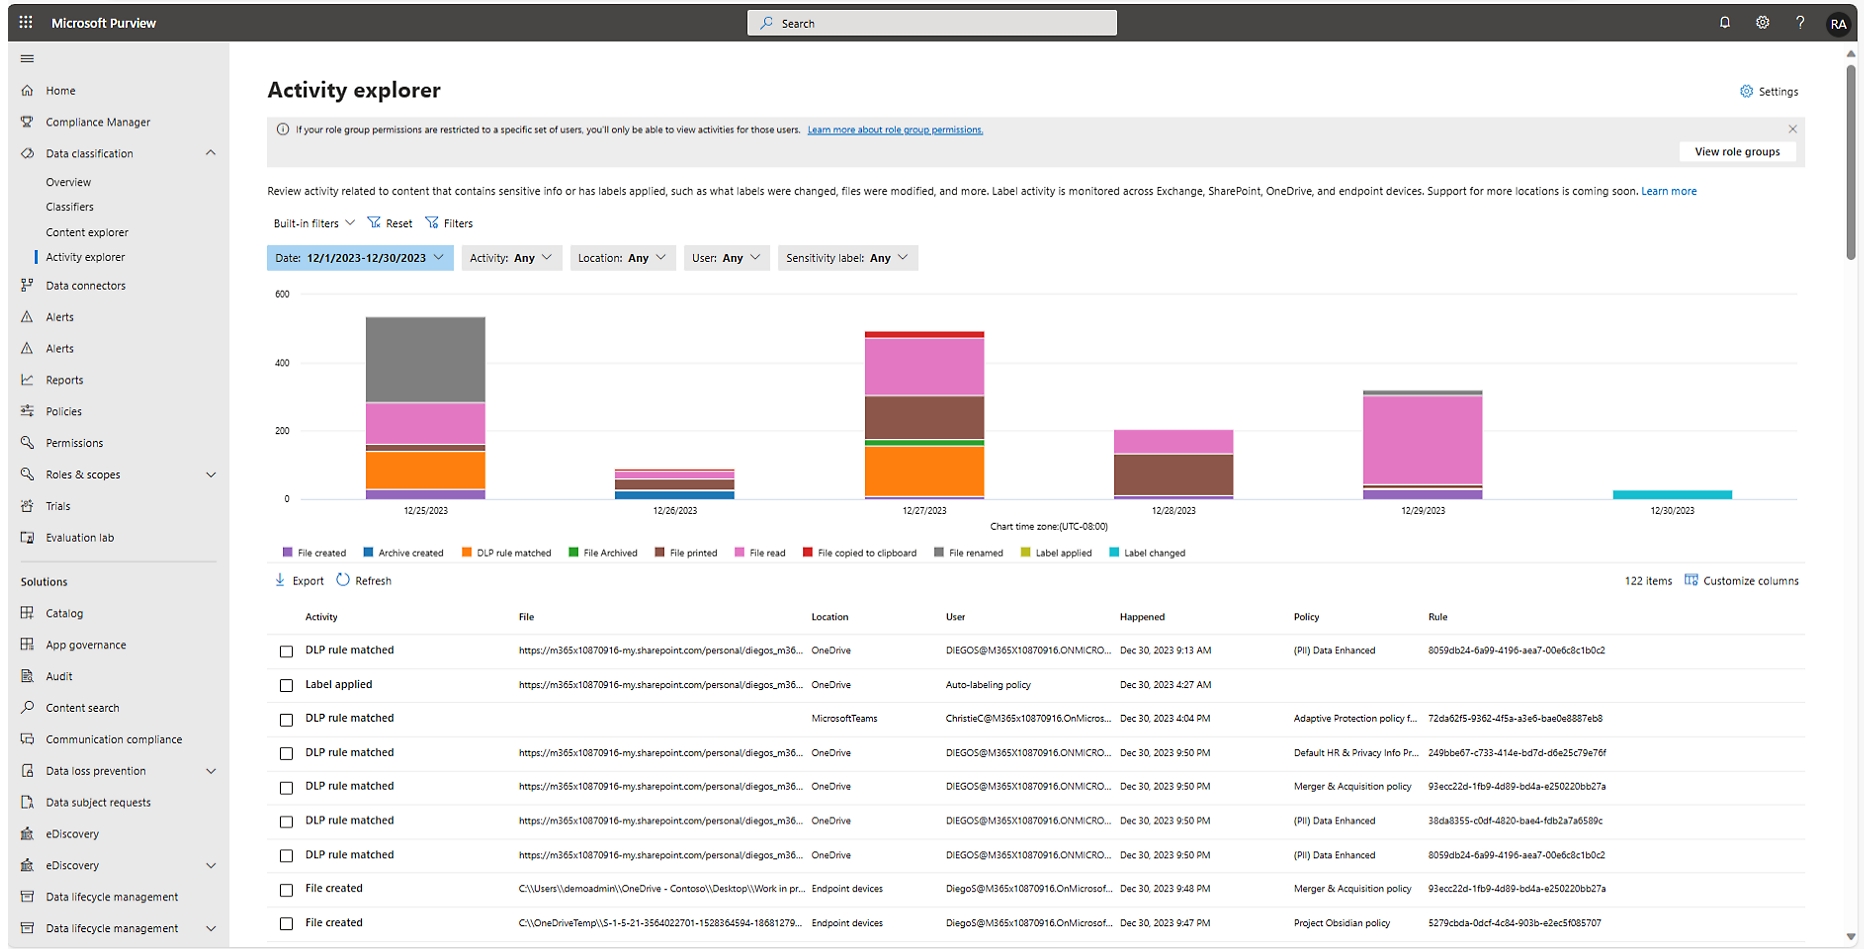 Interface de l’explorateur d’activités de l’espace partenaires Microsoft, montrant un graphique et une table avec des données sur les activités des utilisateurs.